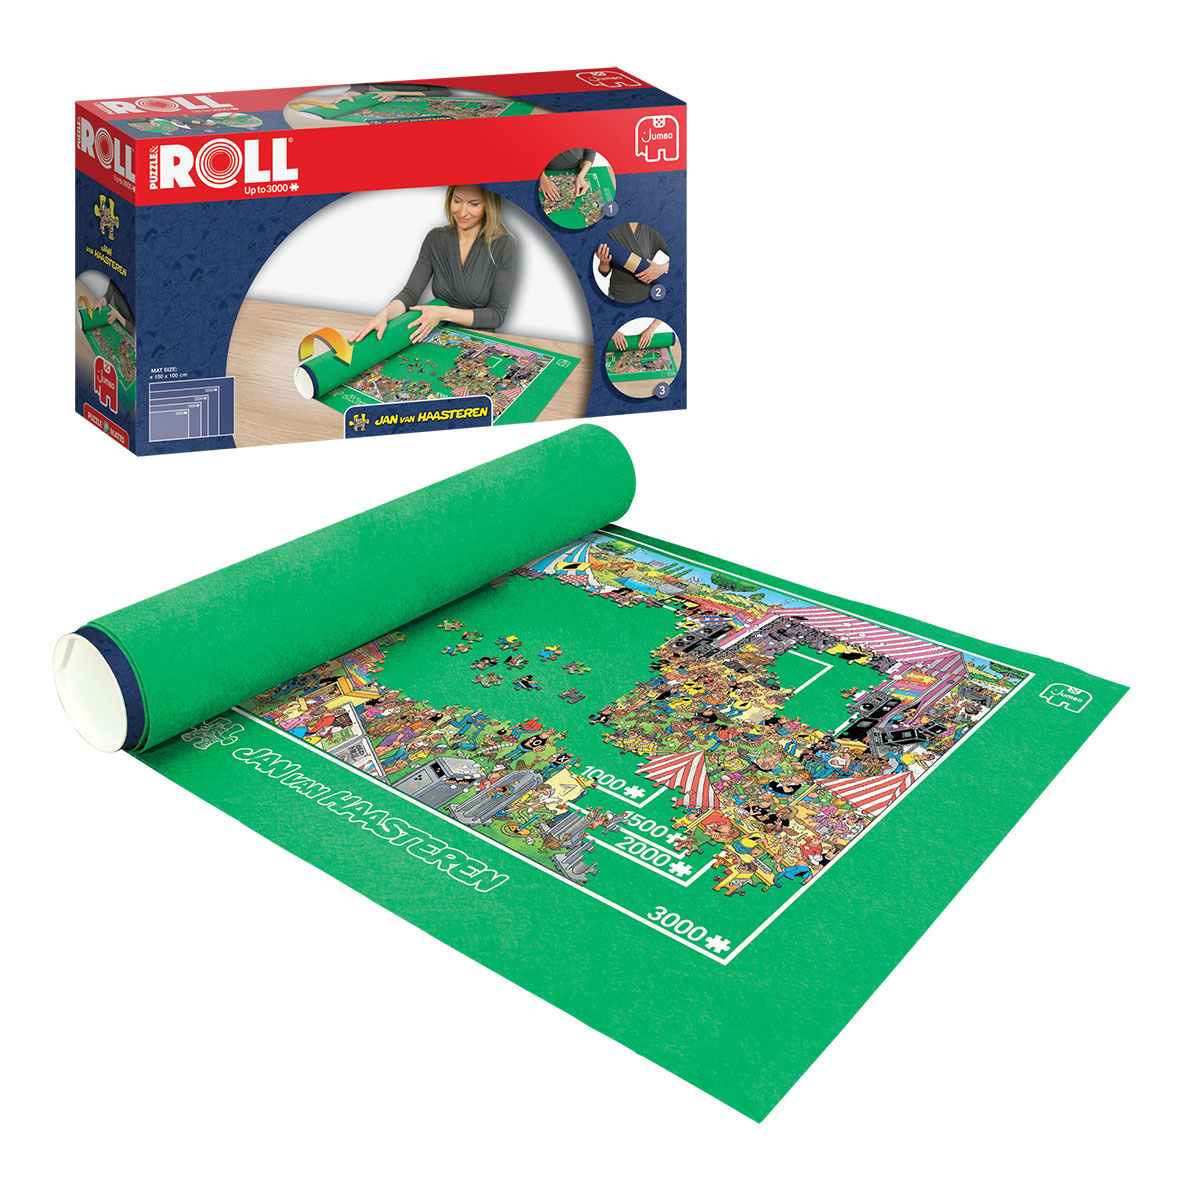 Tapis Puzzle 500 - 3000 pièces - Au Tapis Vert